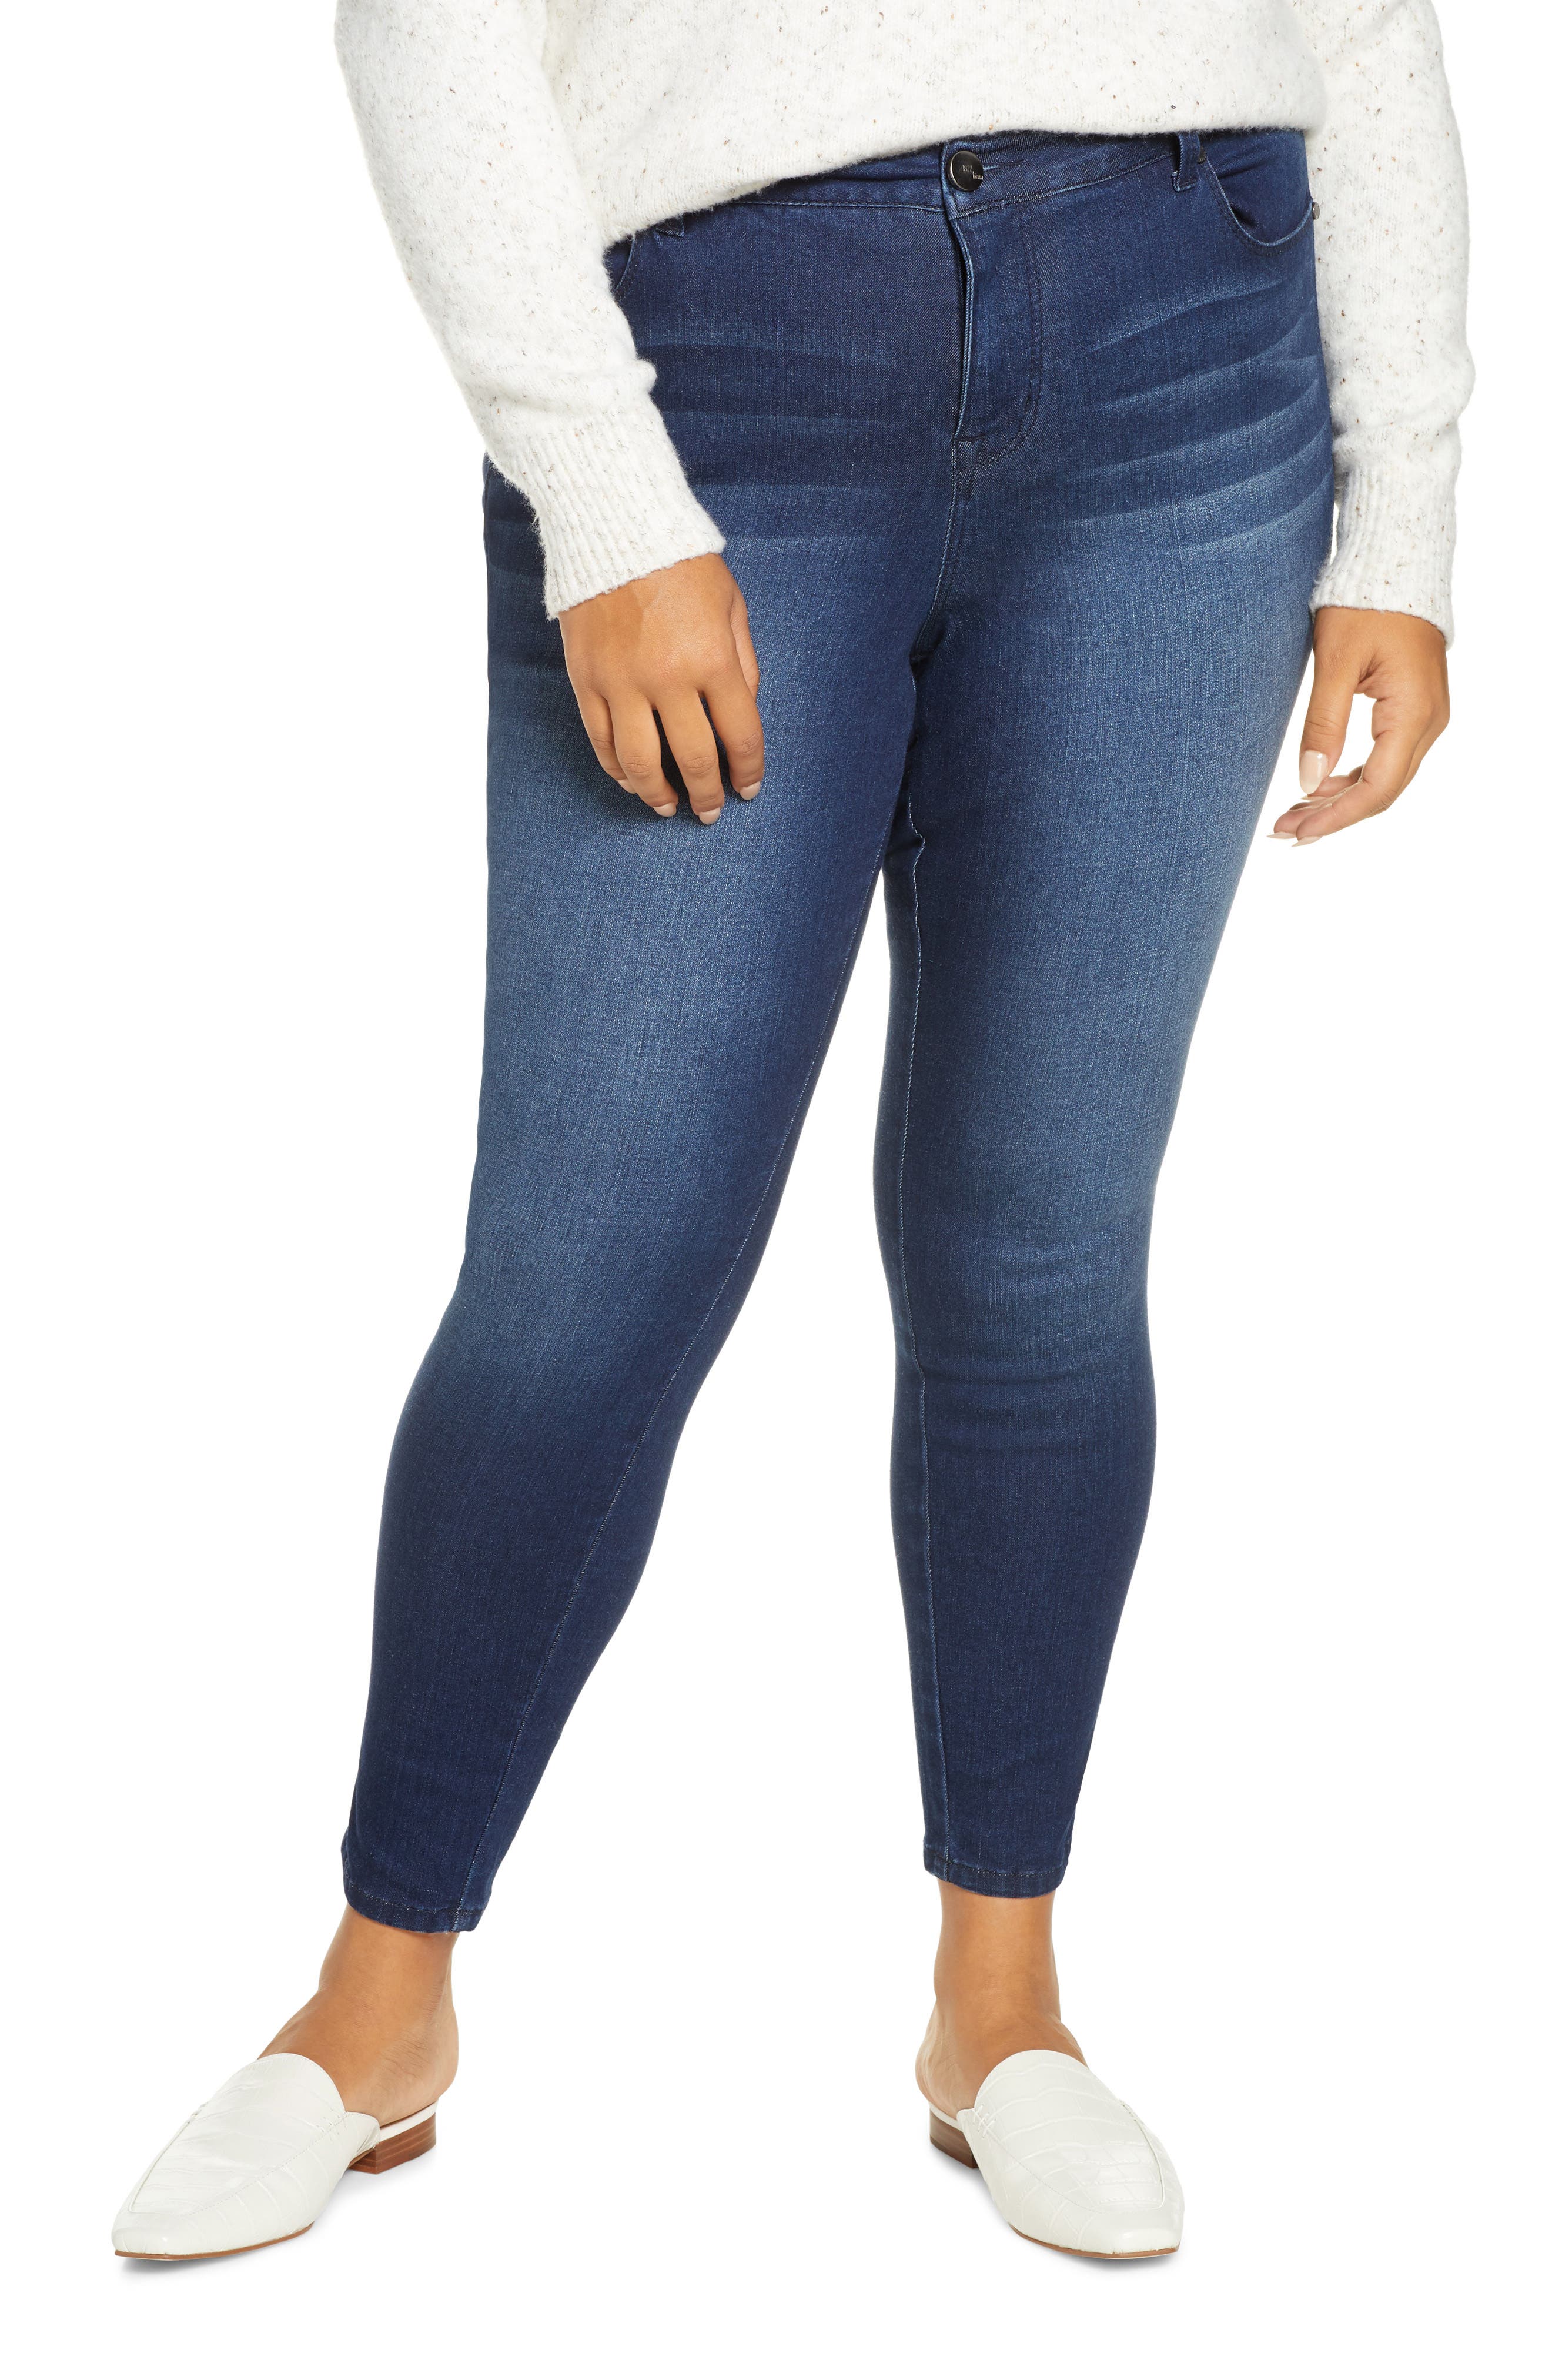 1822 adrianna jeans size 10